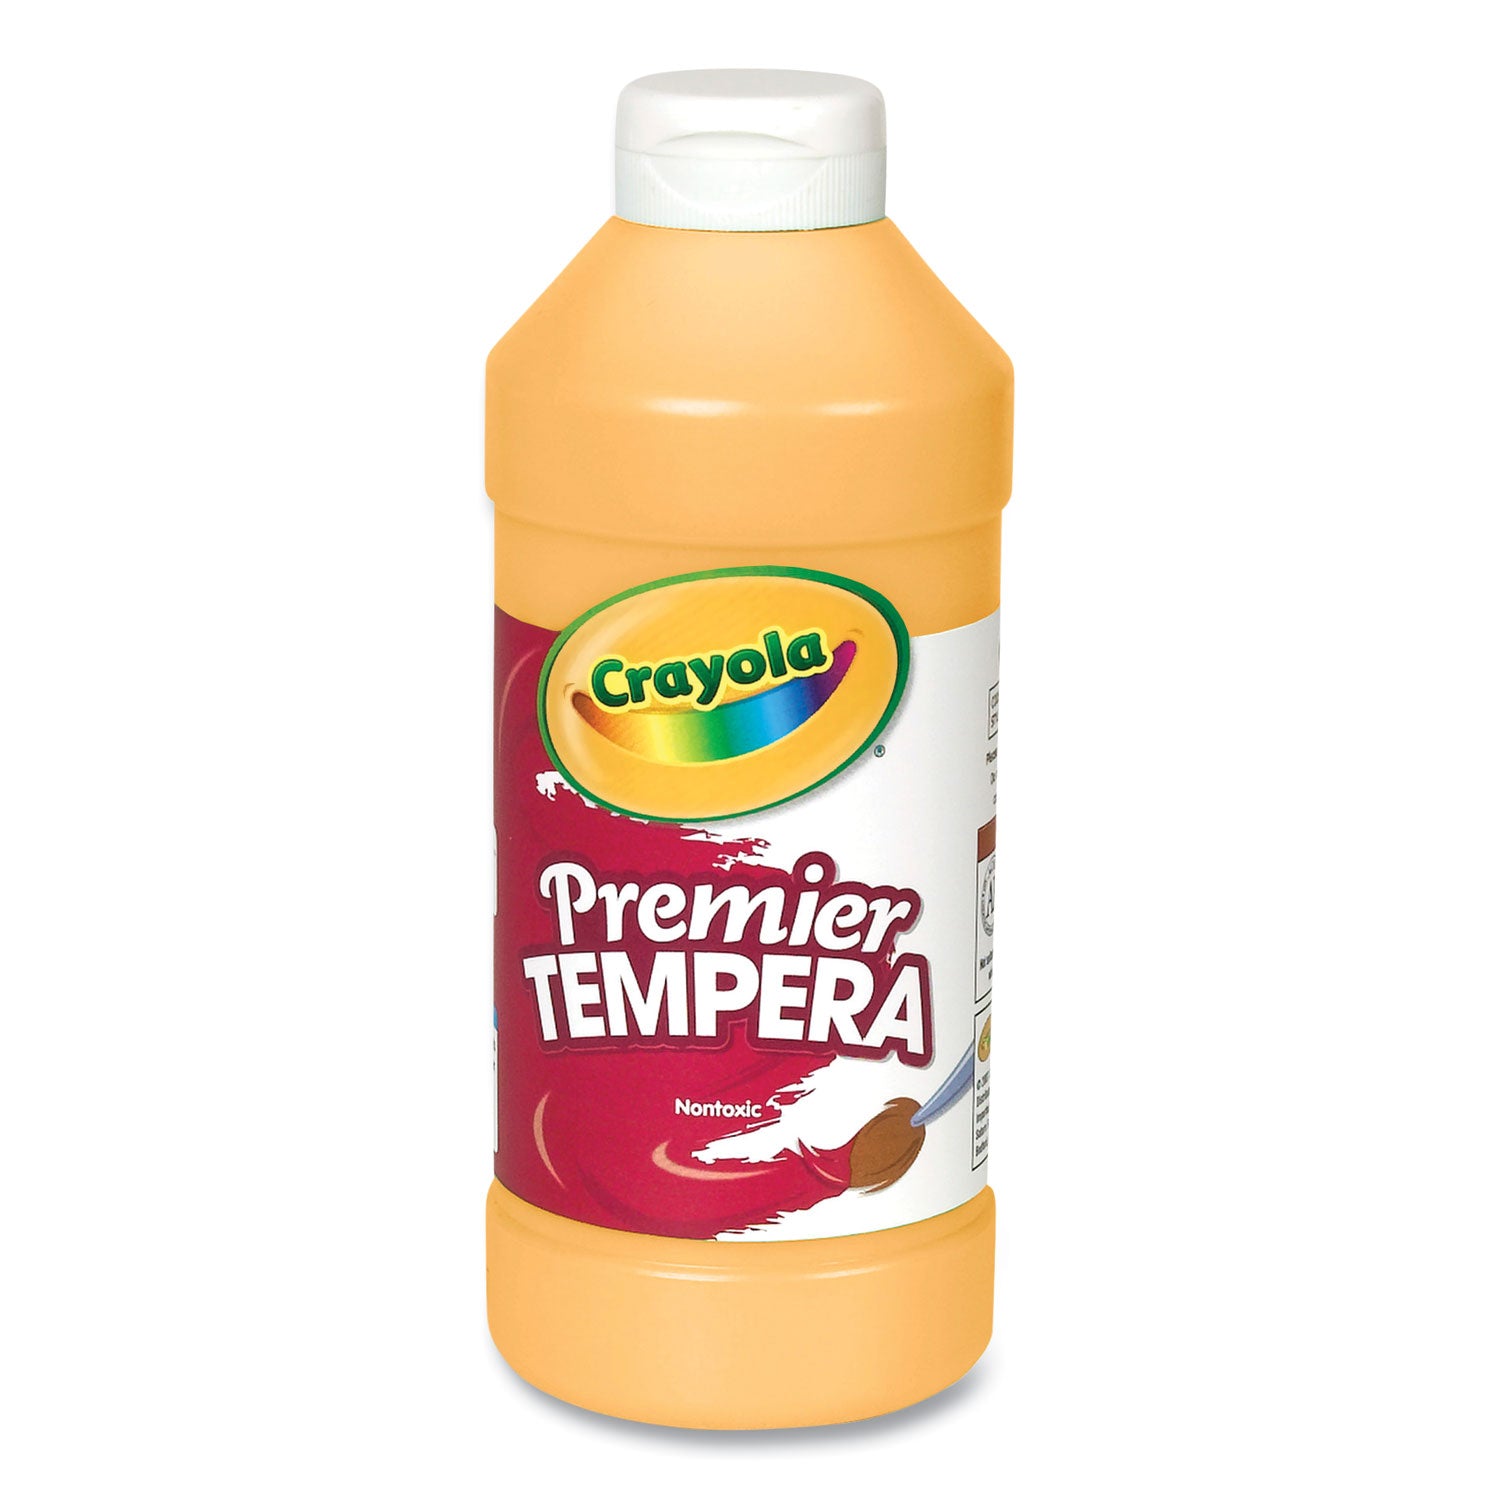 Premier Tempera Paint, Peach, 16 oz Bottle - 